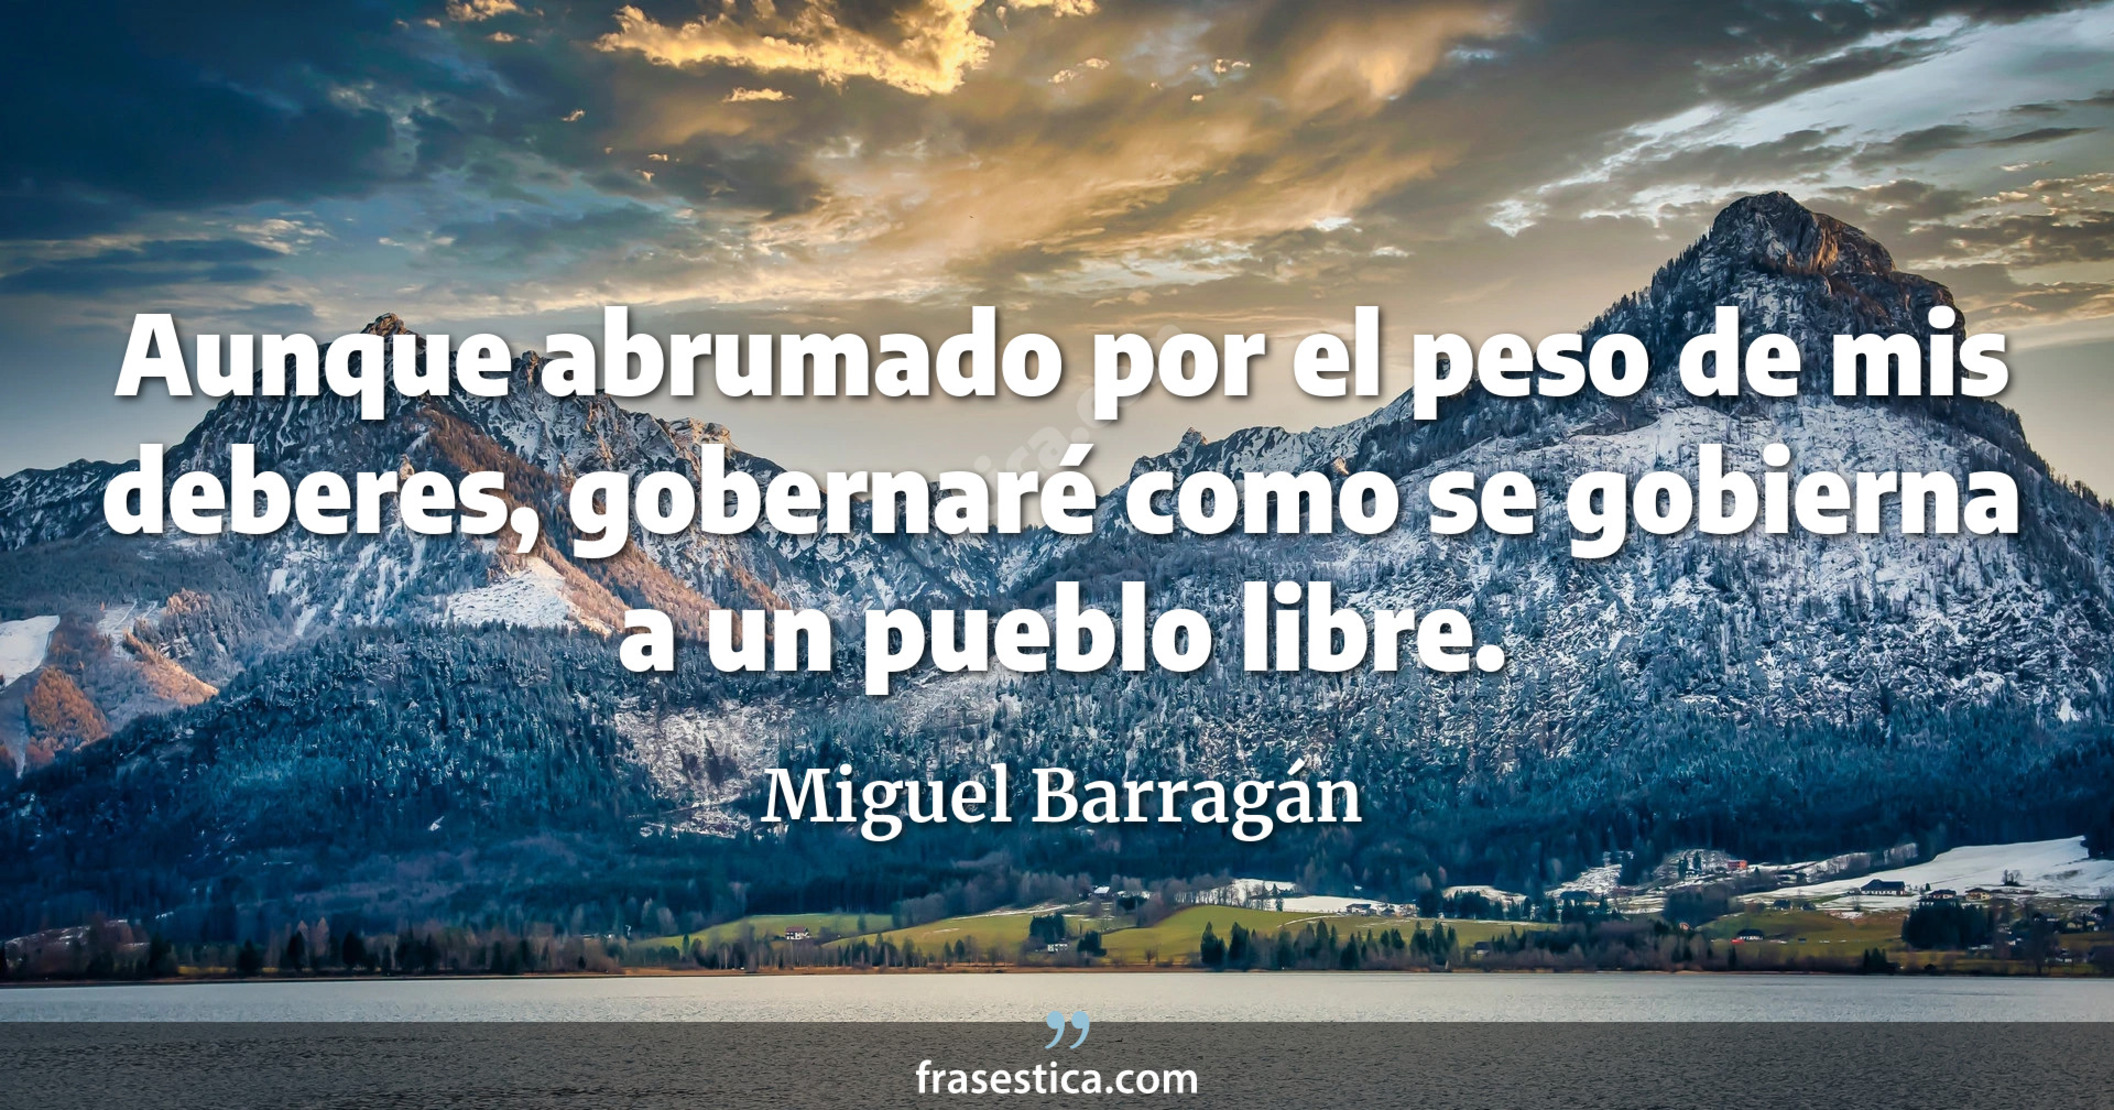 Aunque abrumado por el peso de mis deberes, gobernaré como se gobierna a un pueblo libre. - Miguel Barragán